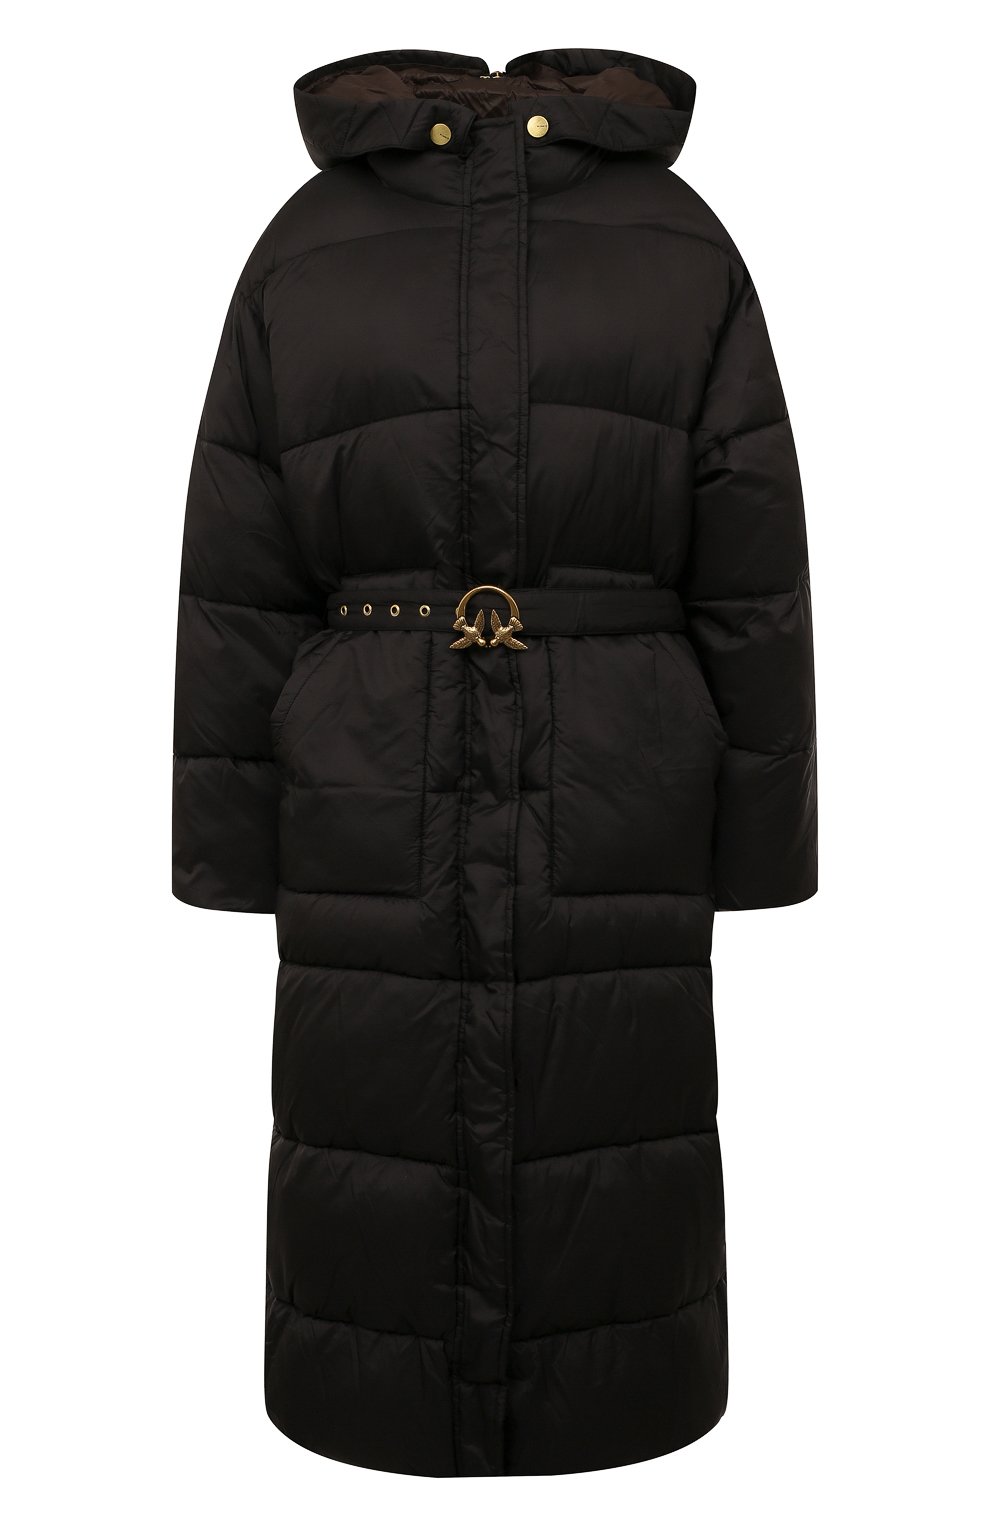 Куртки Pinko, Утепленная куртка Pinko, Китай, Чёрный, Полиамид: 100%; Подкладка-полиамид: 100%; Наполнитель-полиэстер: 100%;, 13025494  - купить